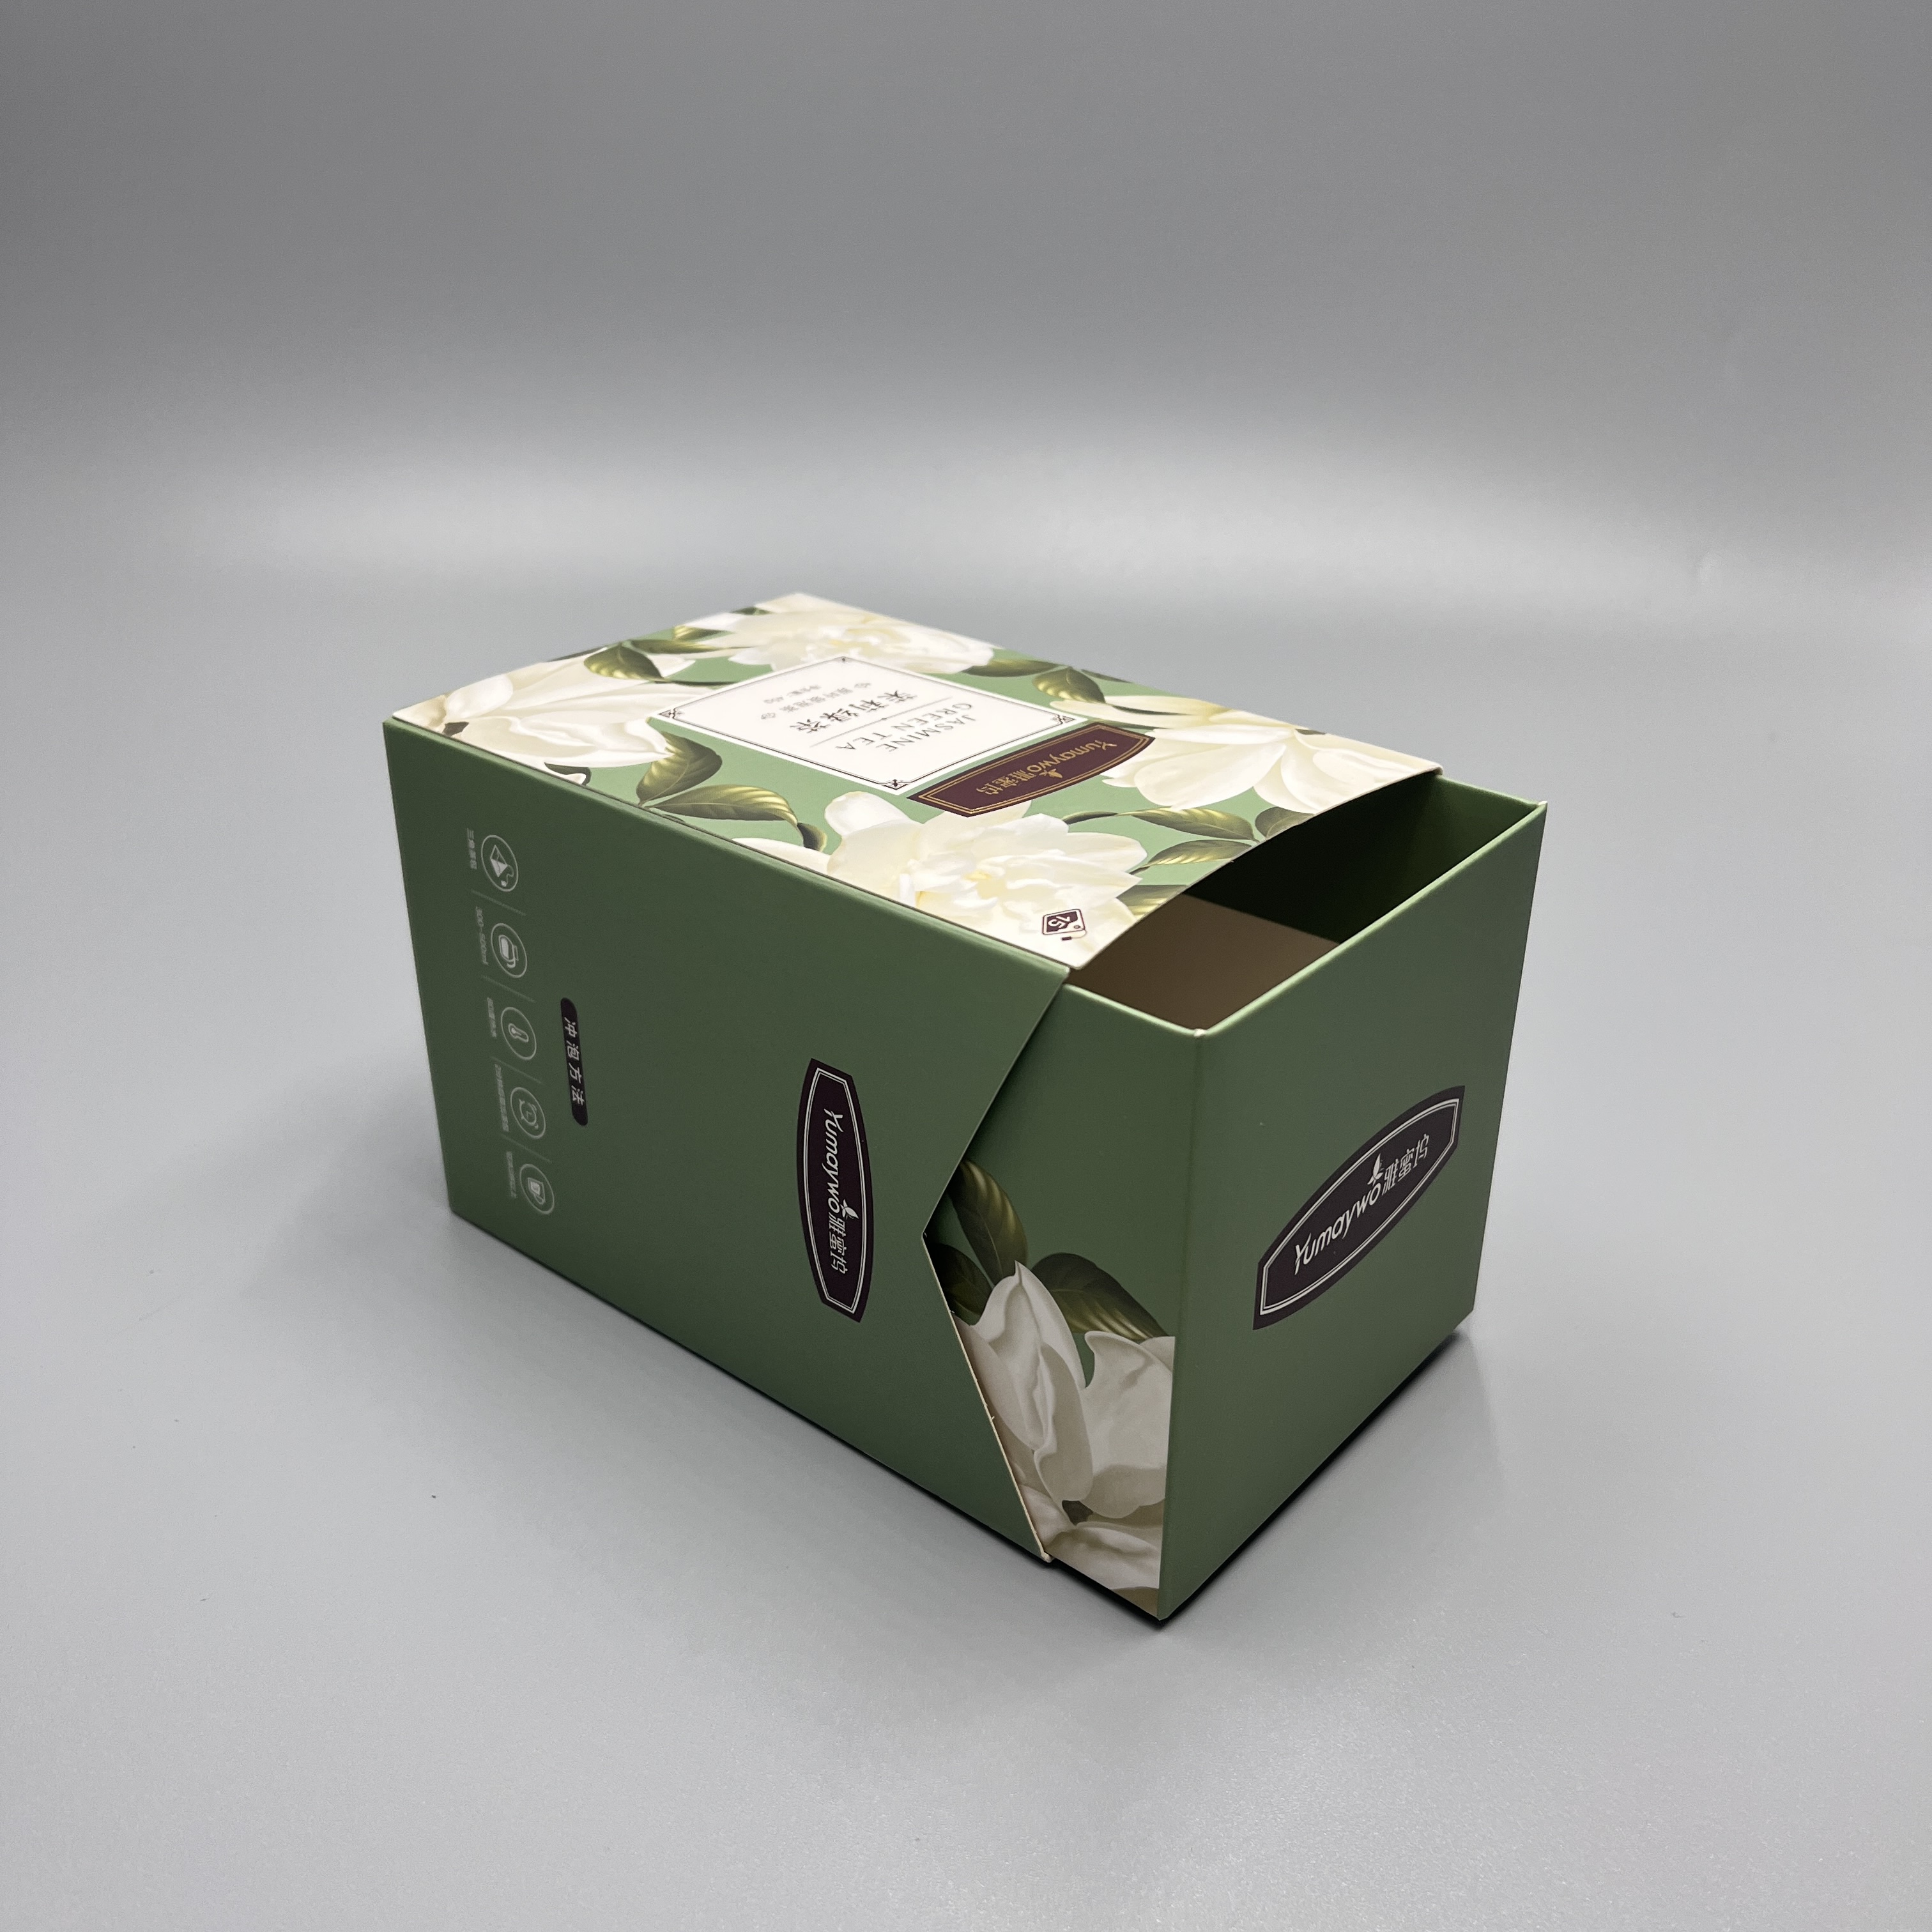 Papírová skládací papírová krabice s vlastním zásuvkovým papírem s logem